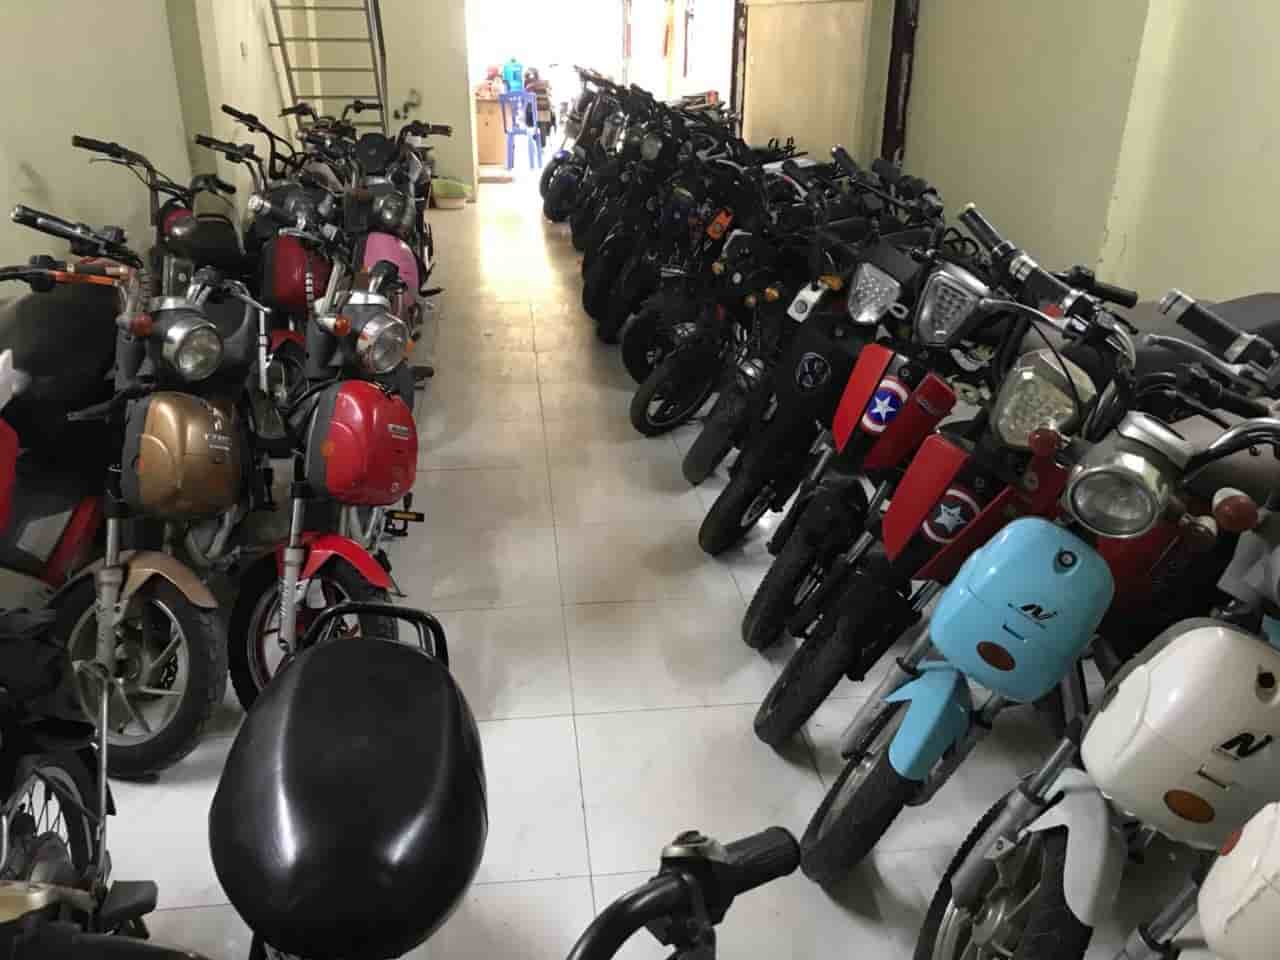 Mua bán xe đạp điện cũ - xe máy điện cũ tại Nam Từ Liêm - Hà Nội